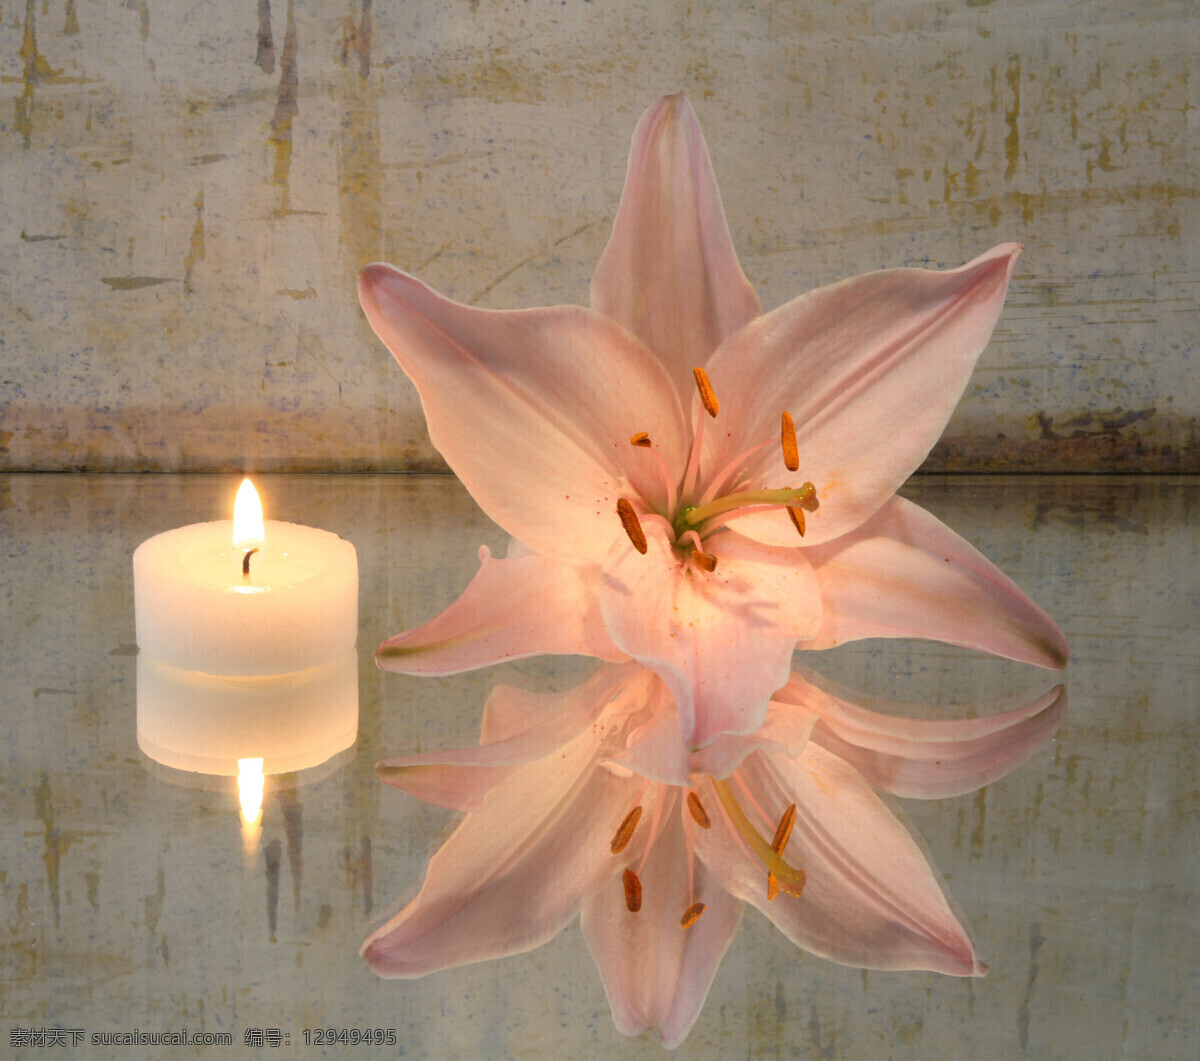 鲜花与蜡烛 spa水疗 美容 养生 鲜花 花朵 花瓣 香薰 蜡烛 生活用品 生活百科 灰色